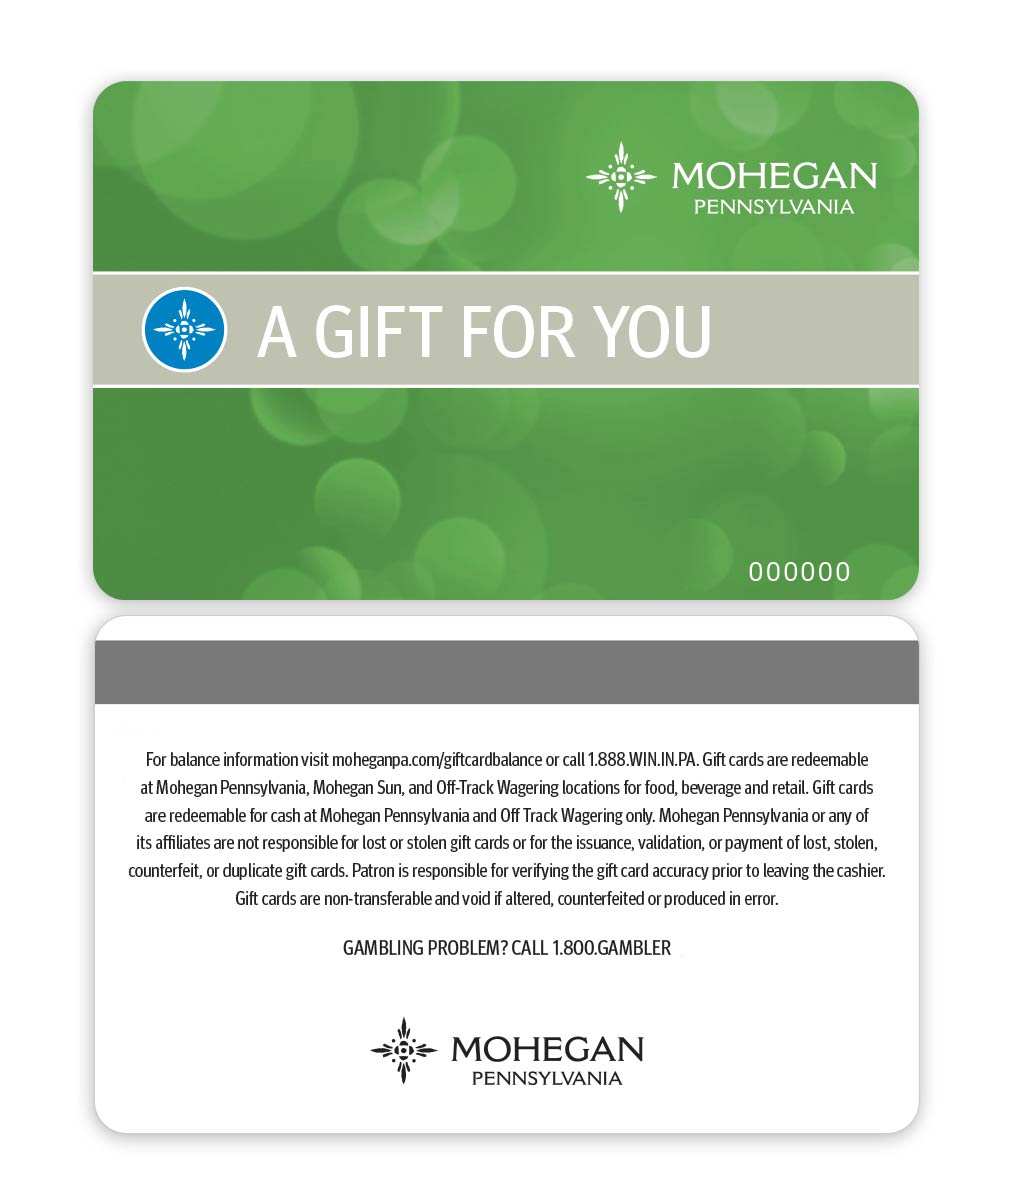 mohegan pennsylvania gift card front